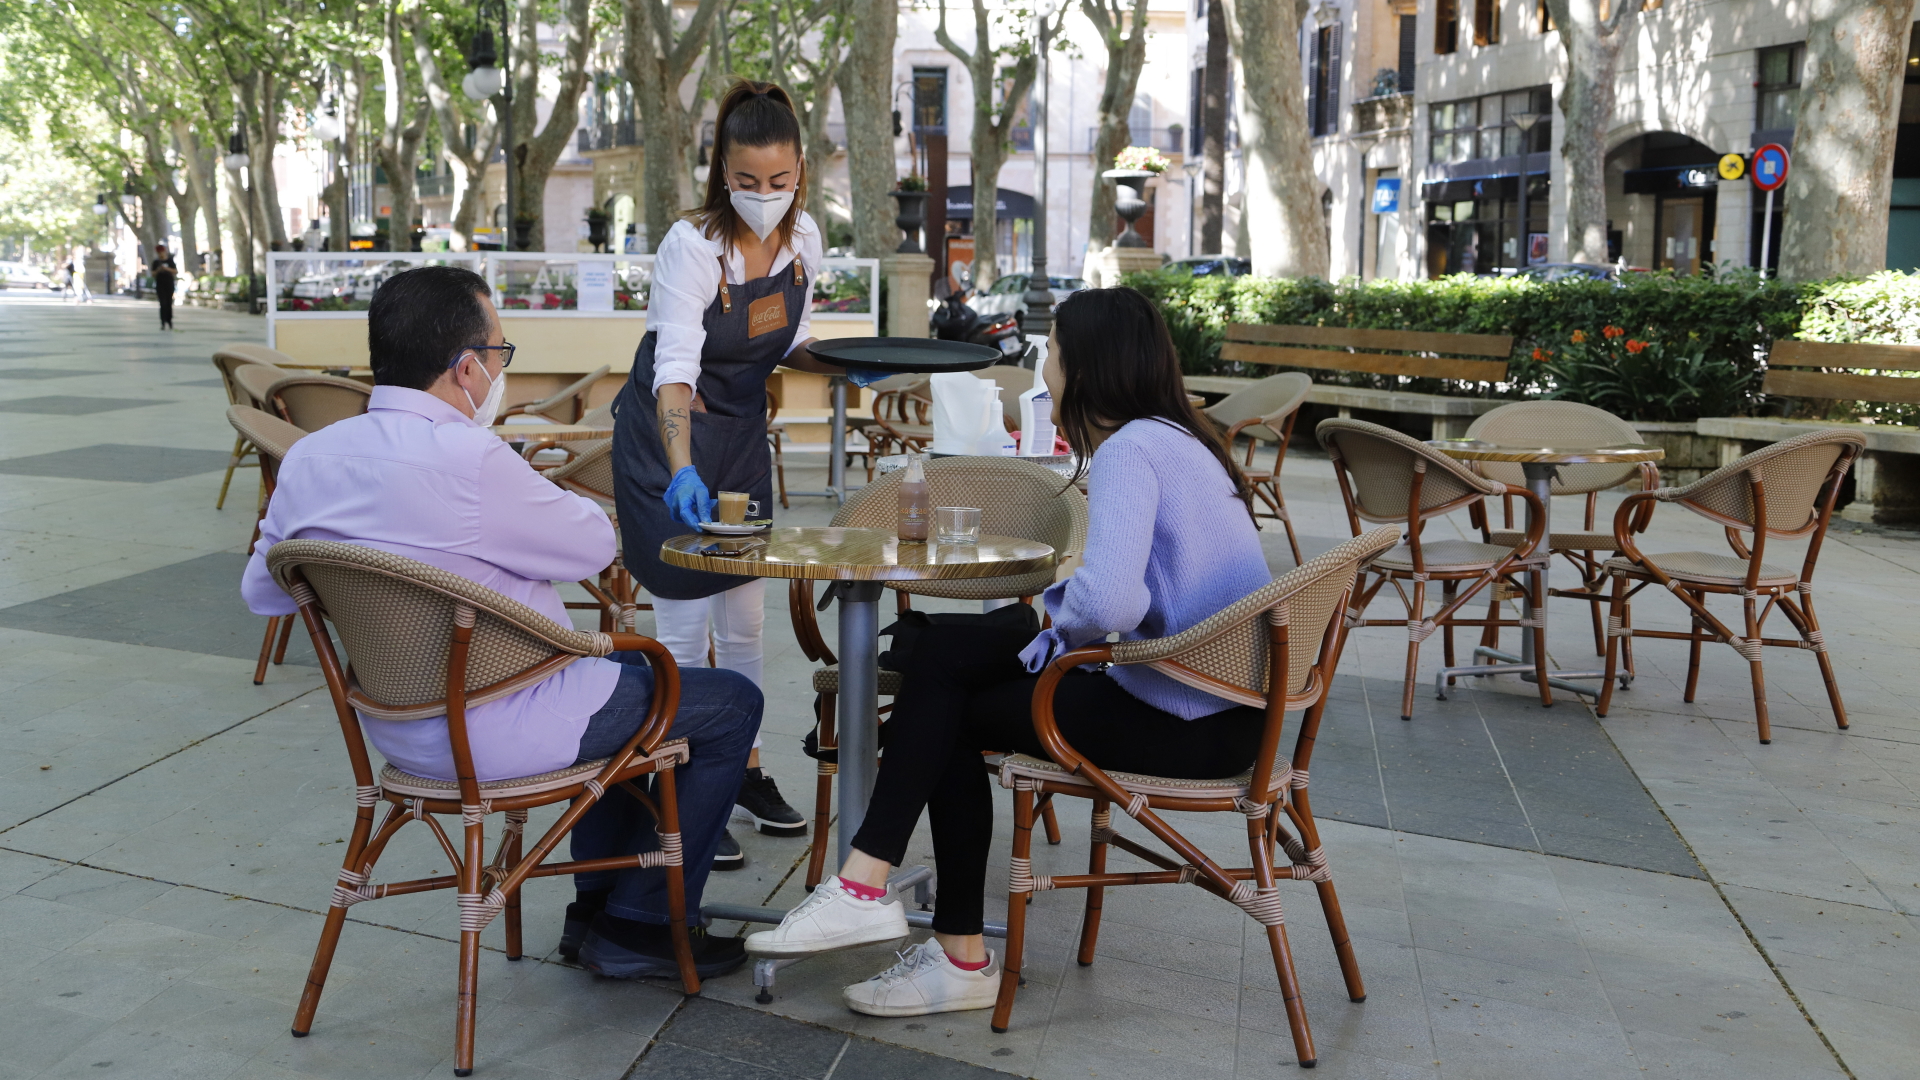 Am Tag der Wiedereröffnung serviert eine Kellnerin zwei Gästen auf der Terrasse einer Bar in Palma auf Mallorca einen Kaffee.